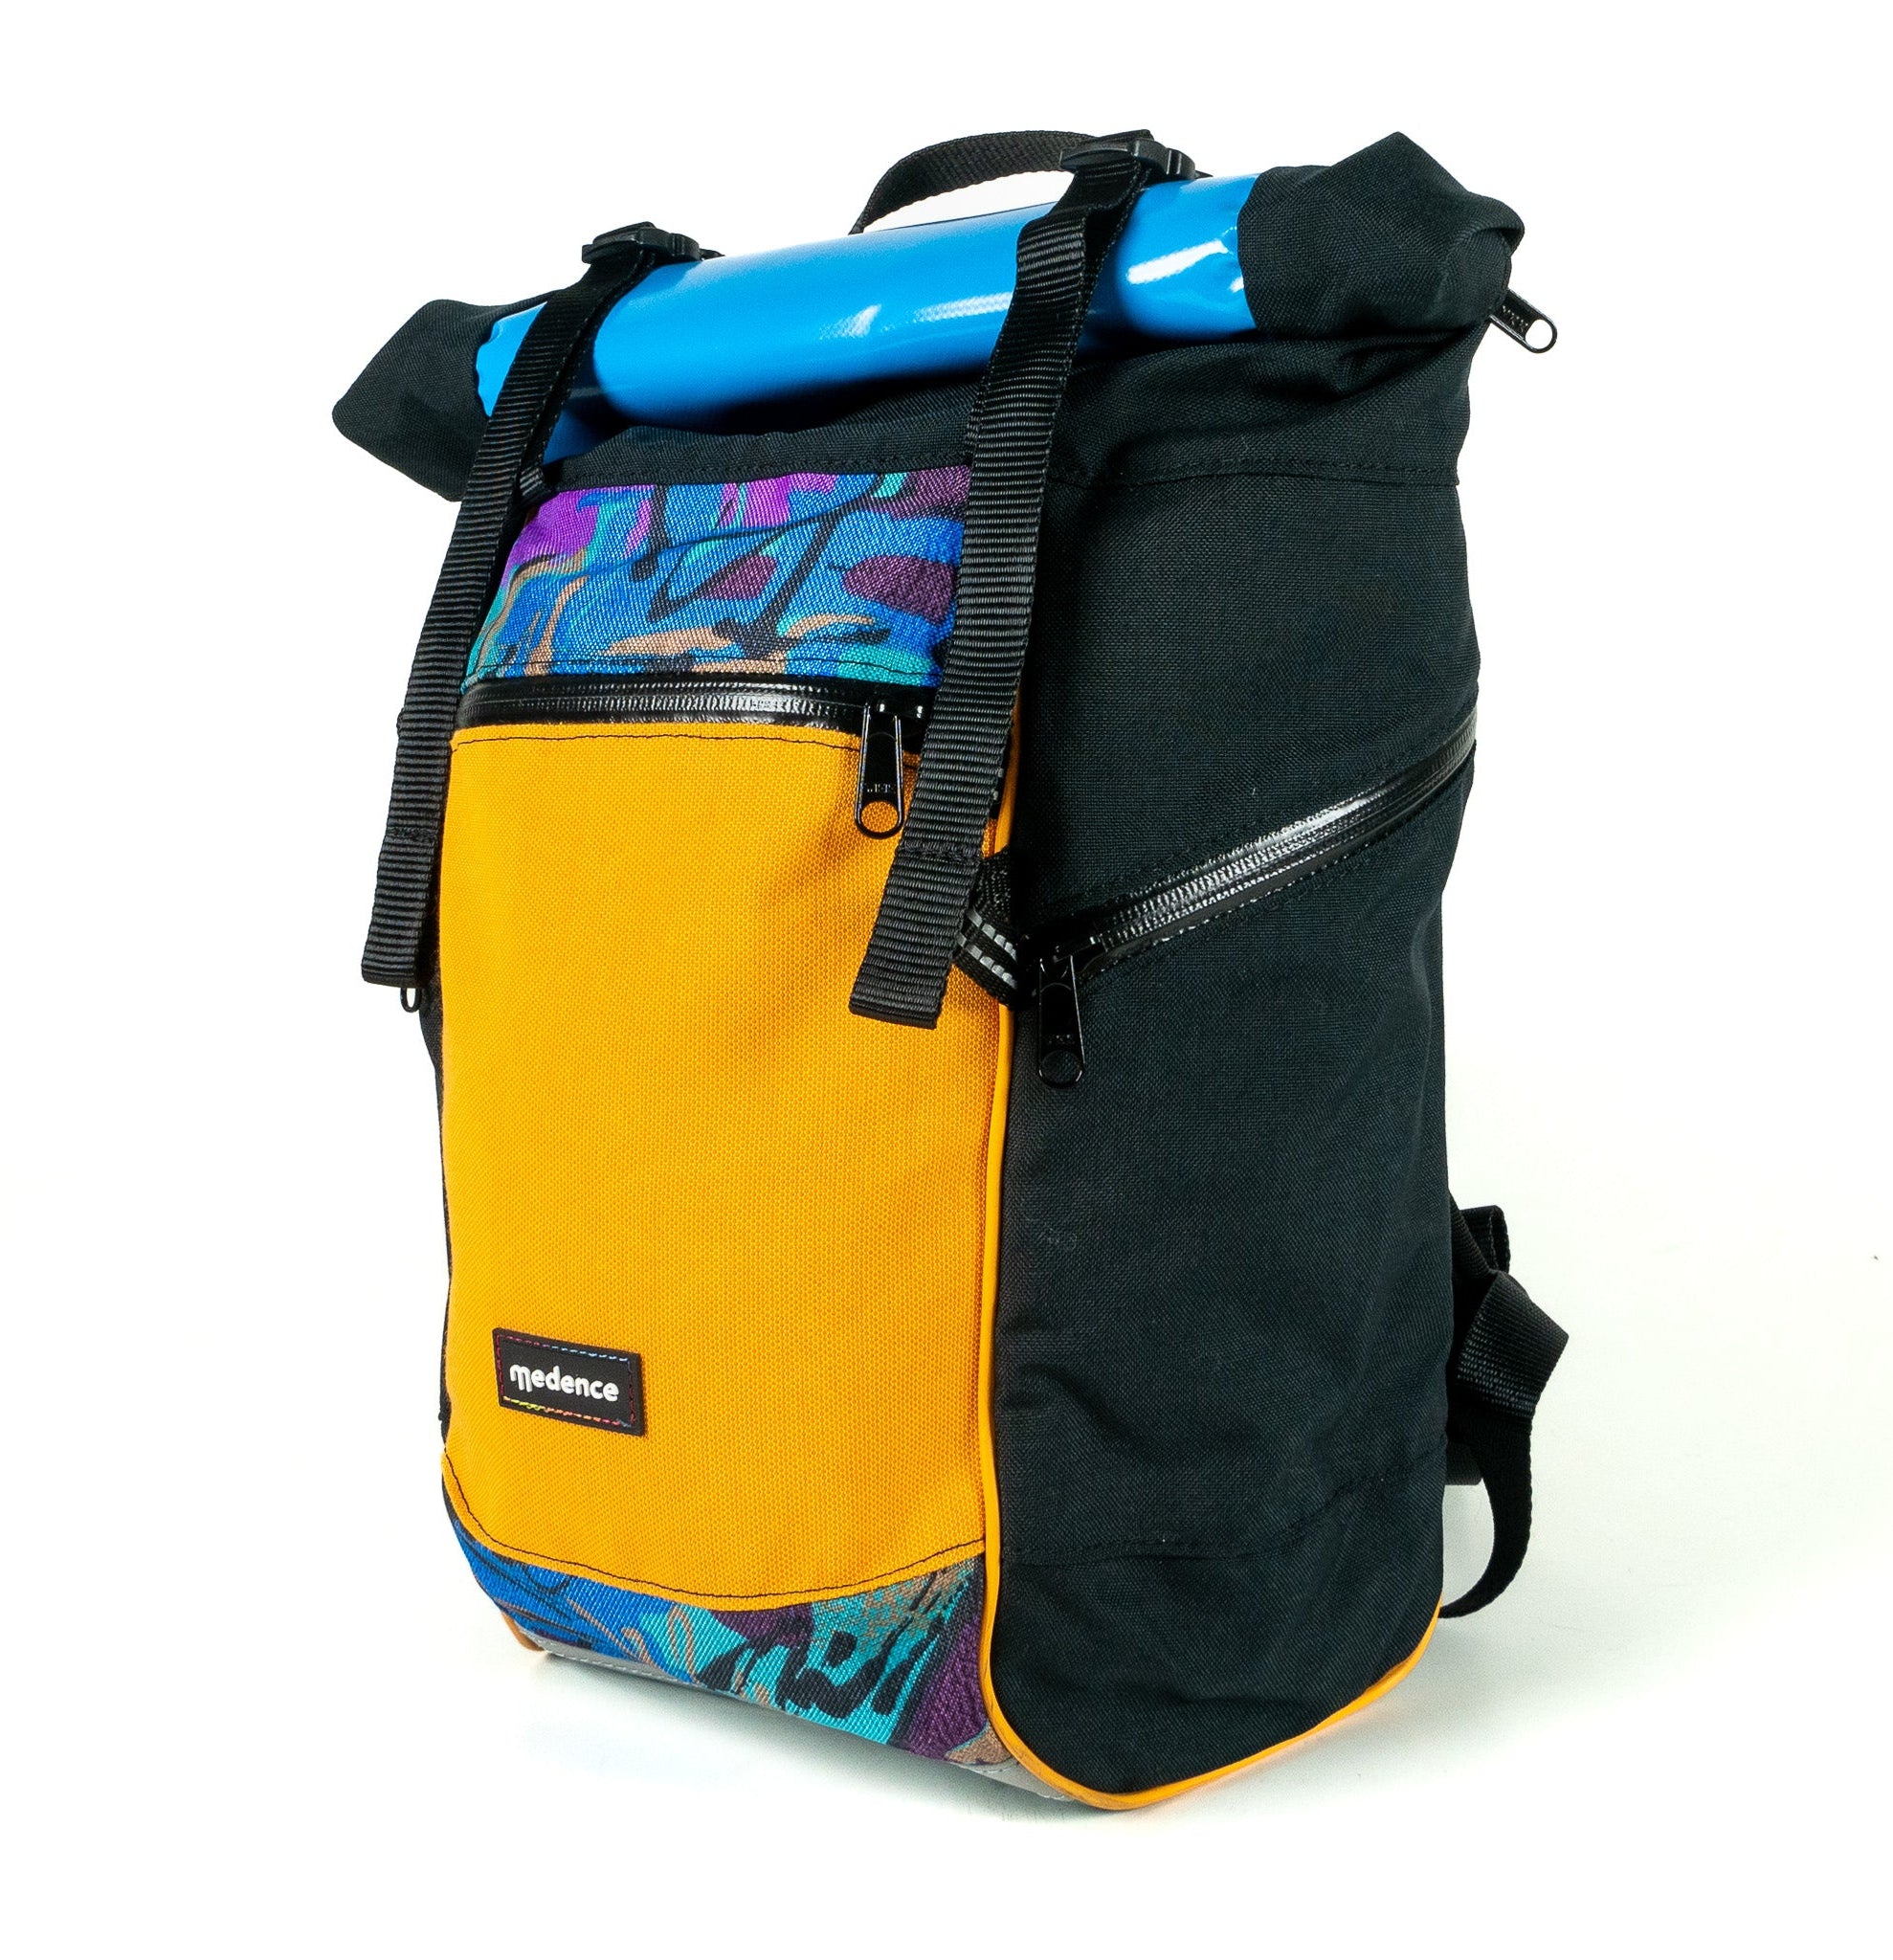 BUDDY No. 126 - Backpacks - medencebag